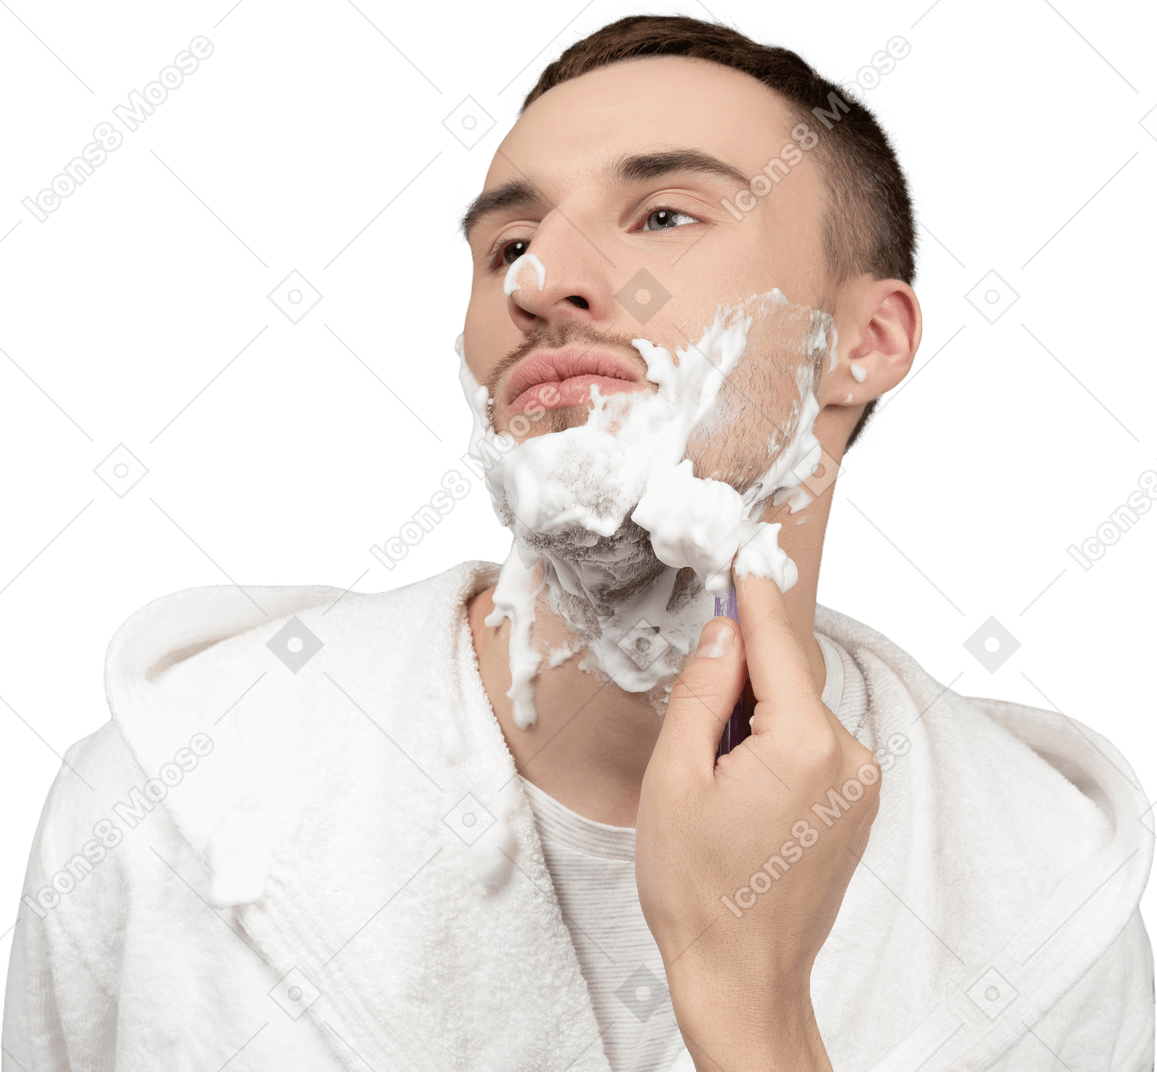 Retrato de um jovem caucasiano sendo barbeado